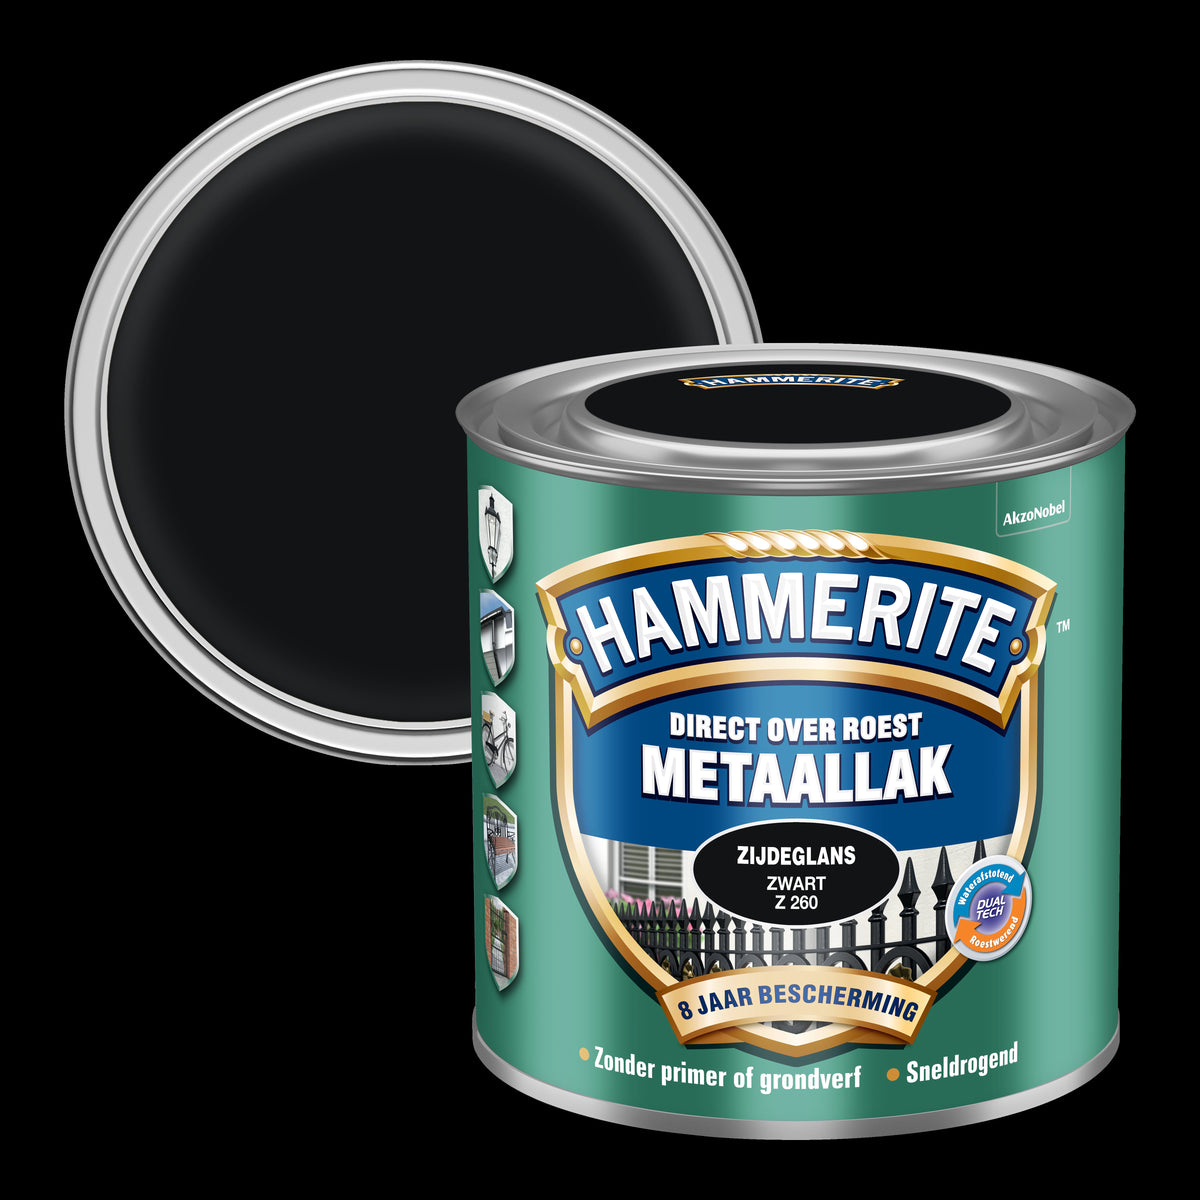 Hammerite metaallak zwart Z260 zijdeglans 250ml